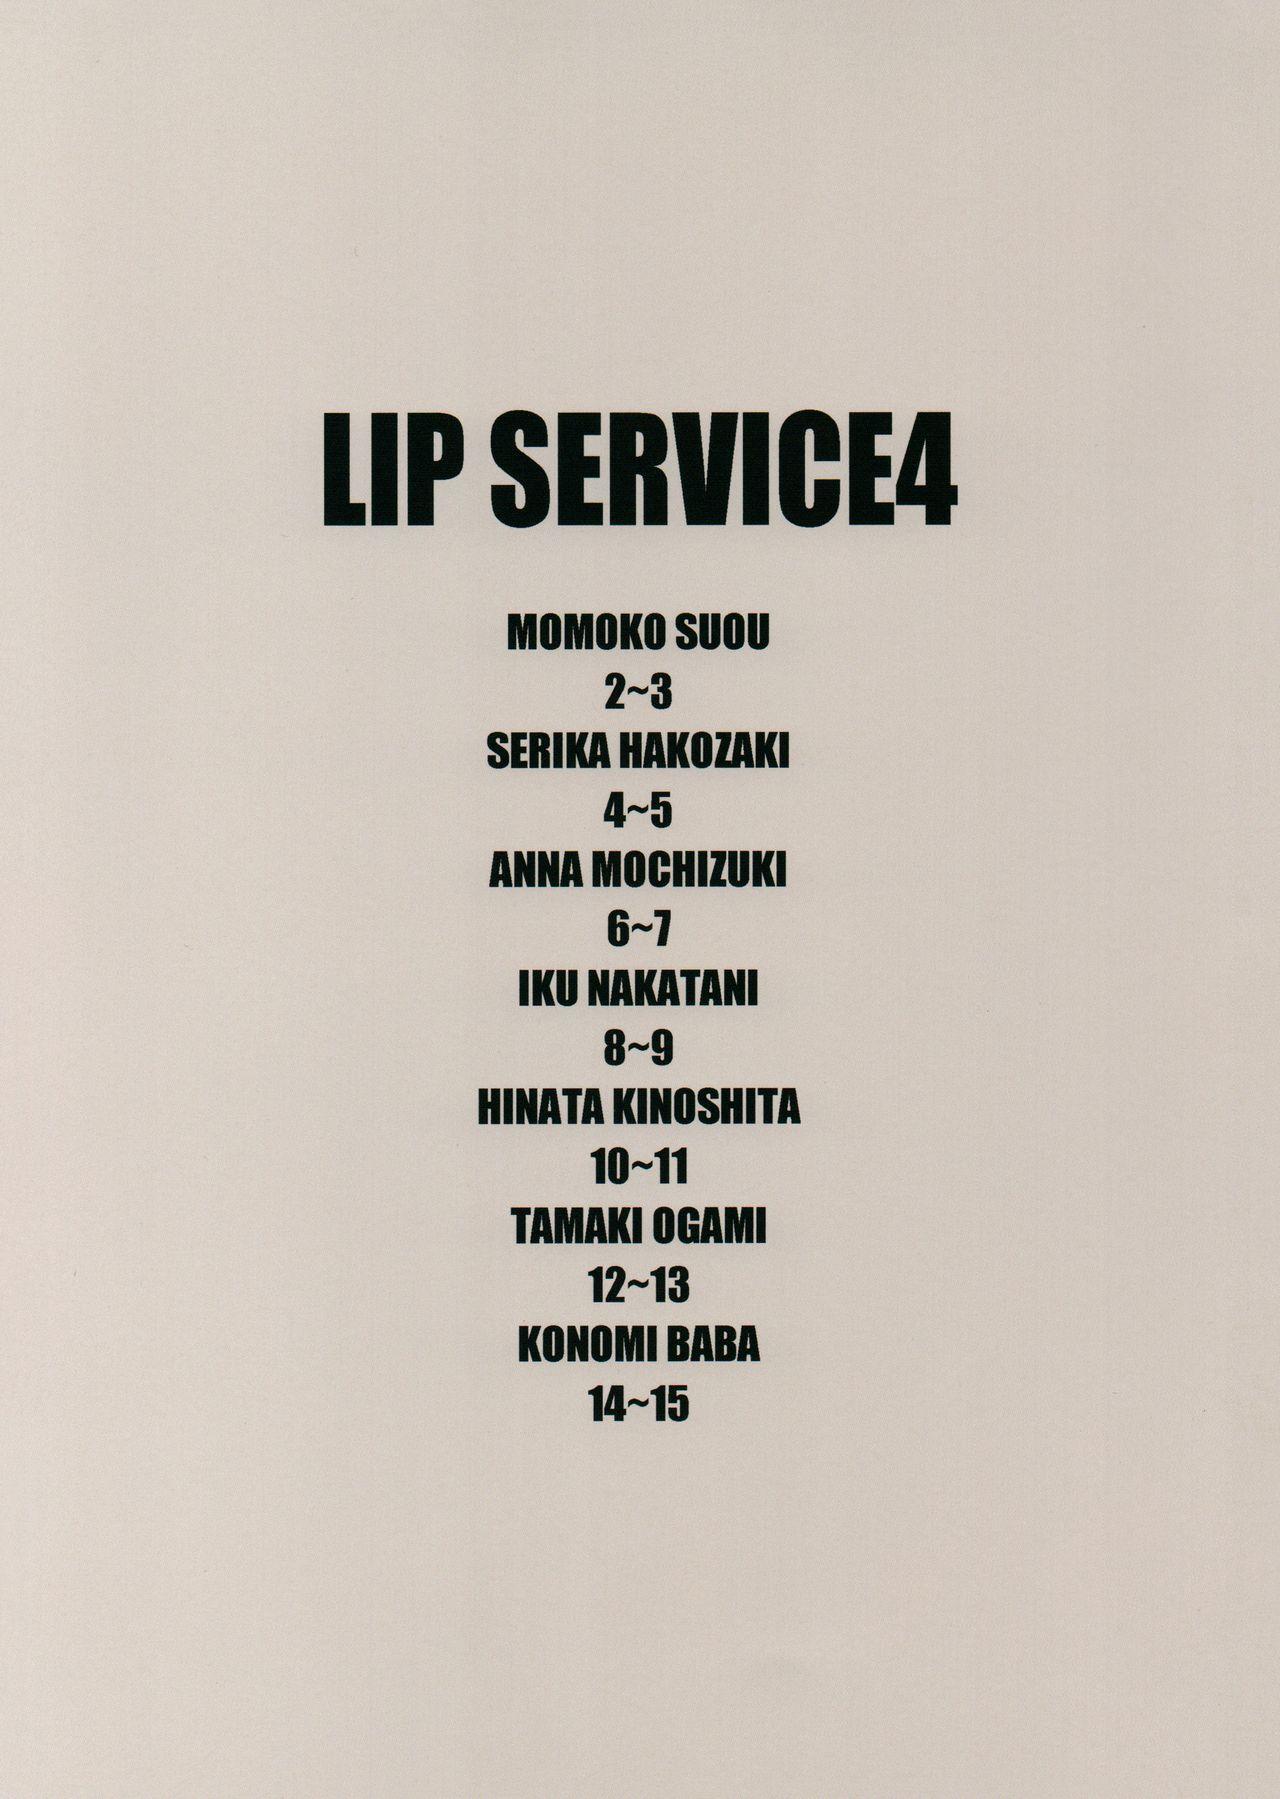 LIP SERVICE 4 1